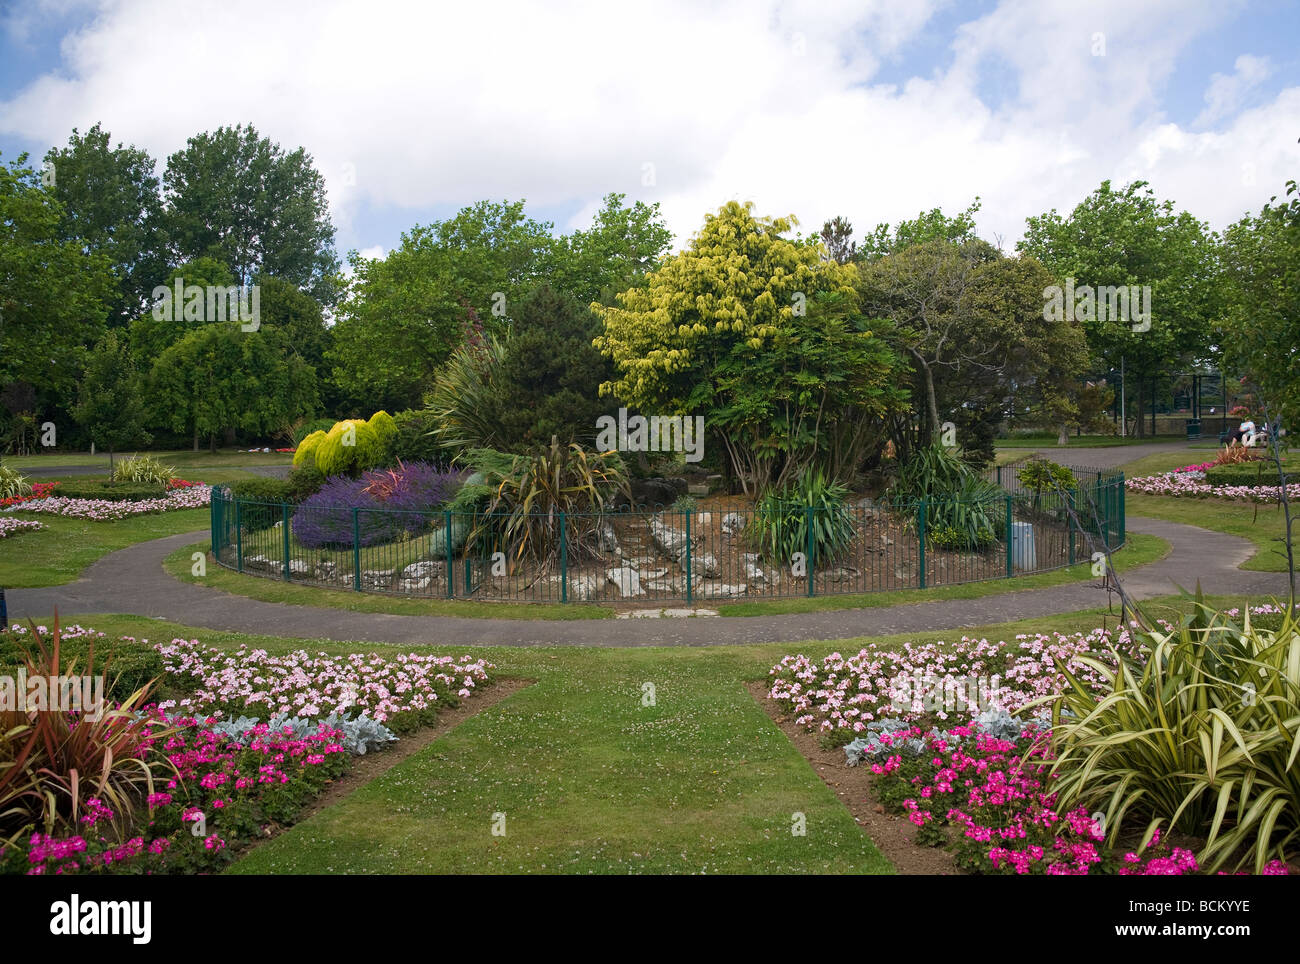 Zentralen Bereich reserviert für Vögel am Strand Haus Park Gardens, Worthing, West Sussex, UK Stockfoto